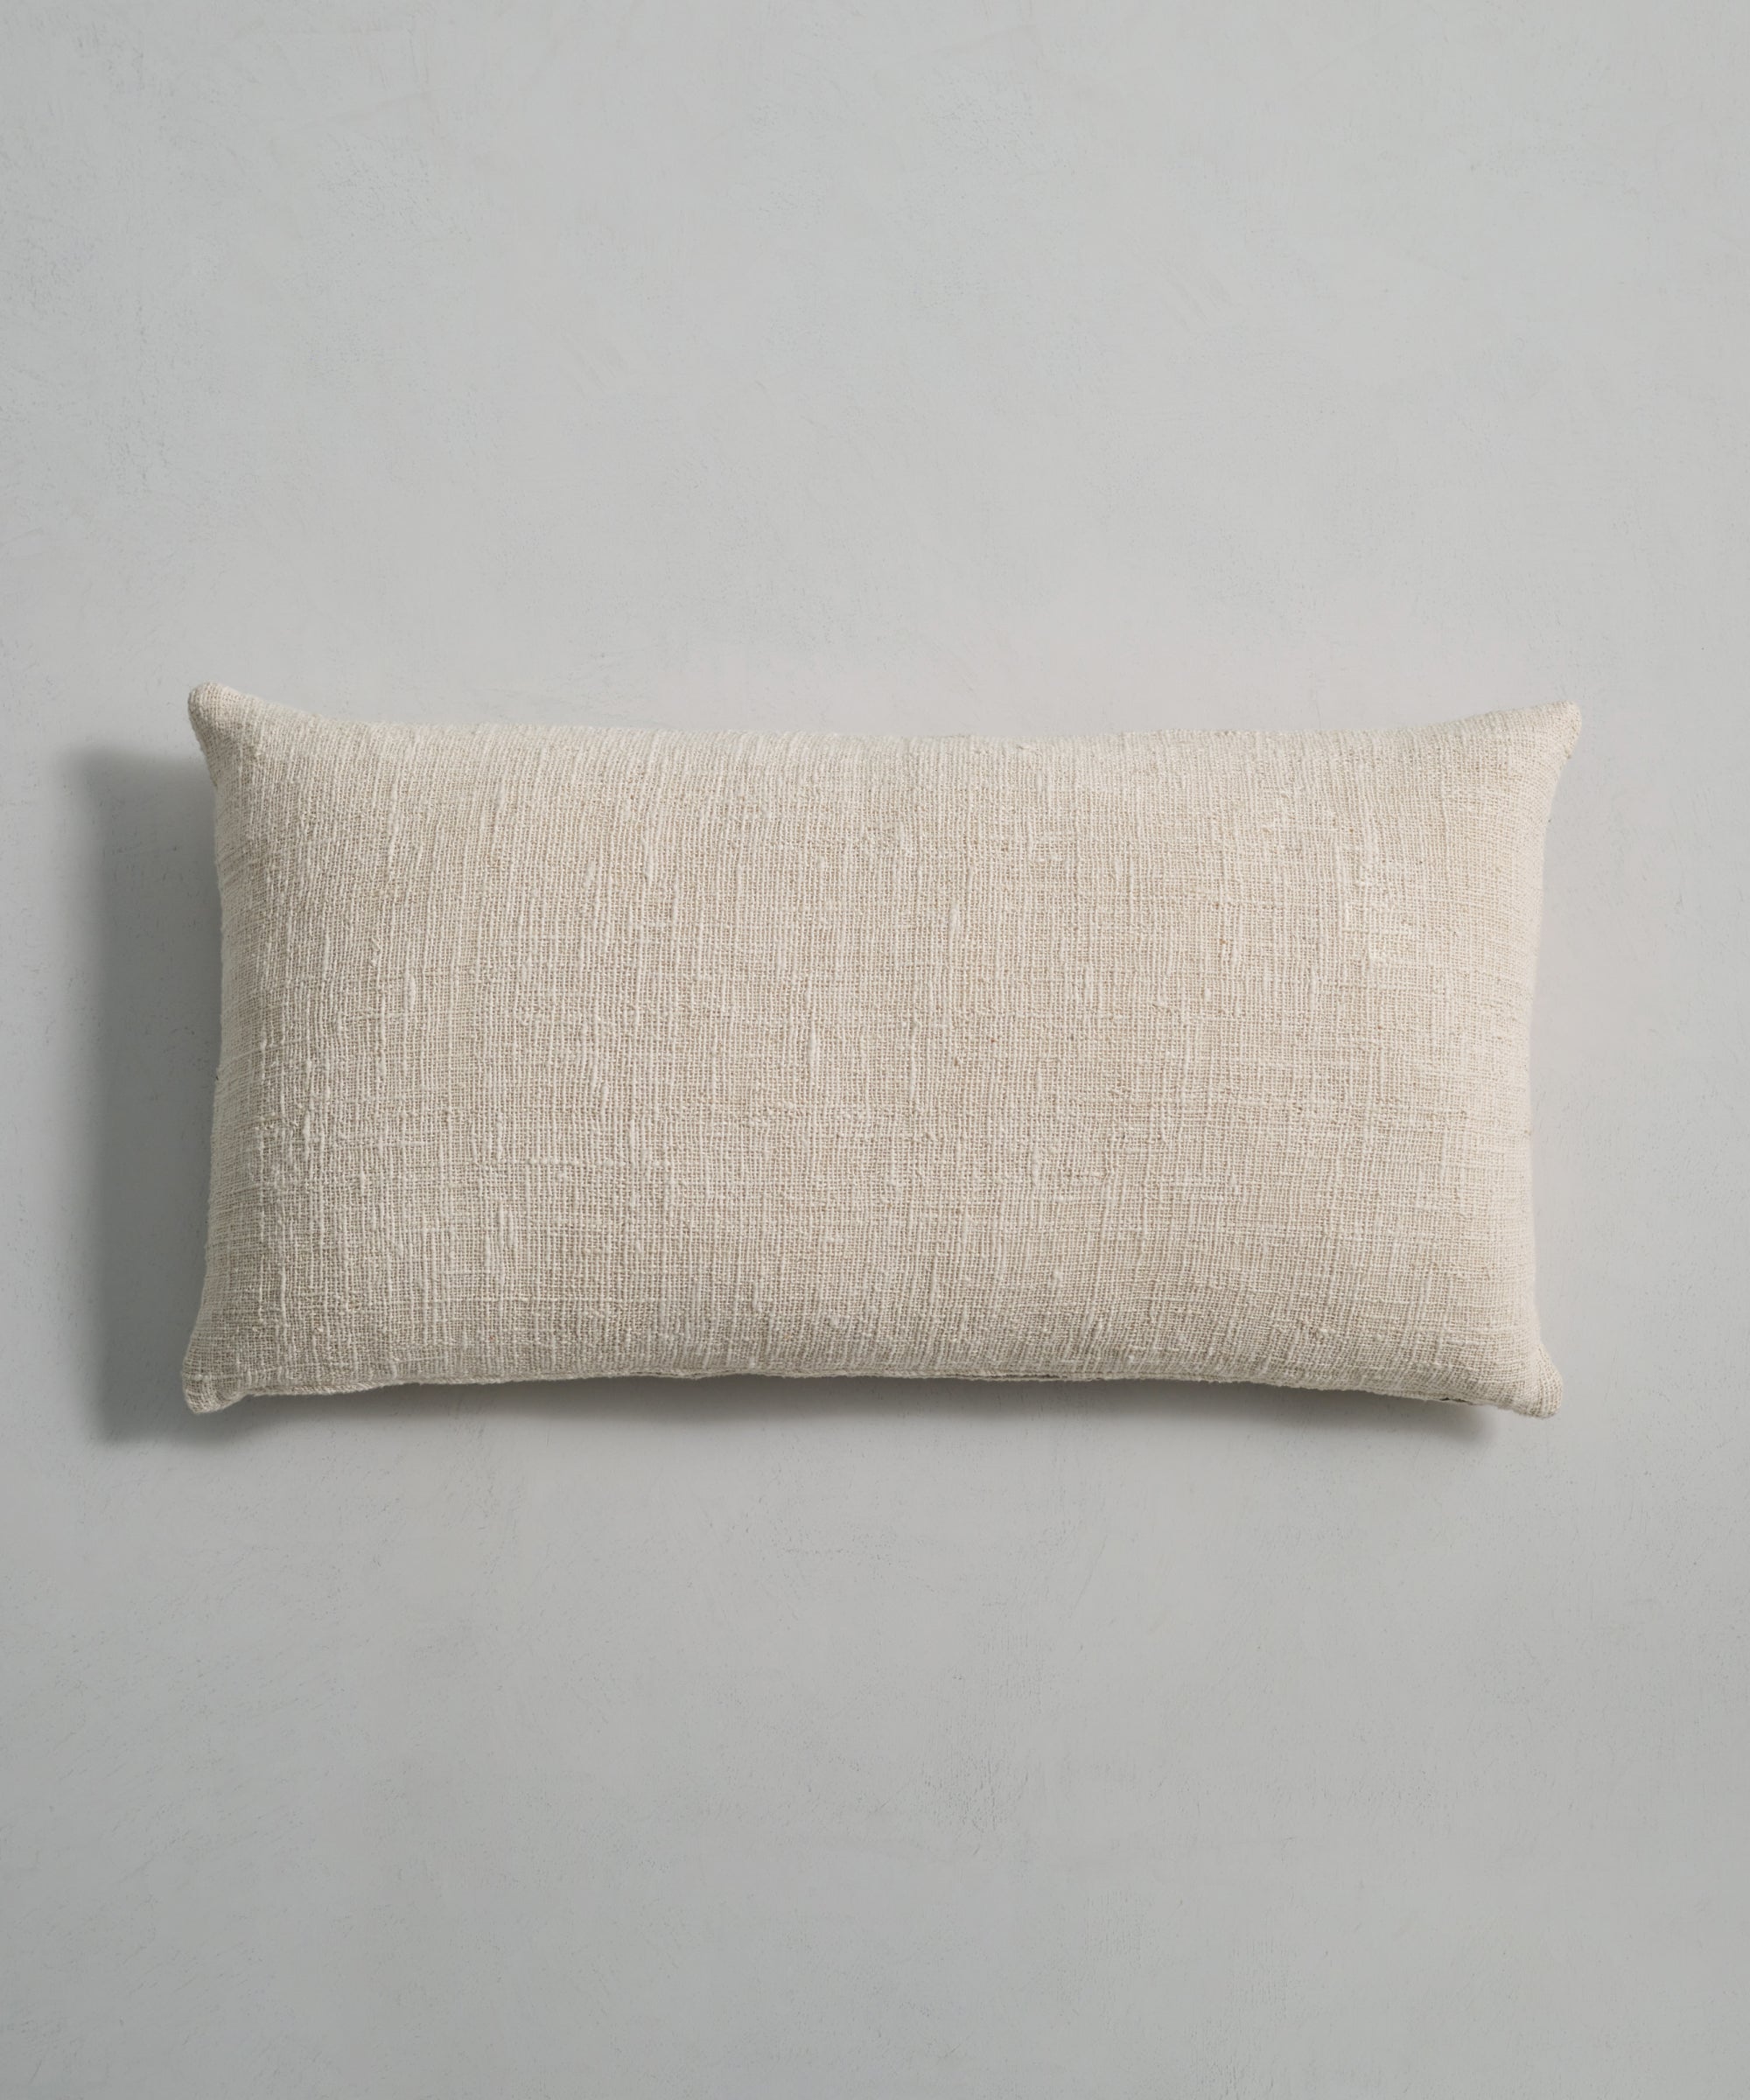 Jenni Kayne Luna Lumbar Pillow Size 16x55